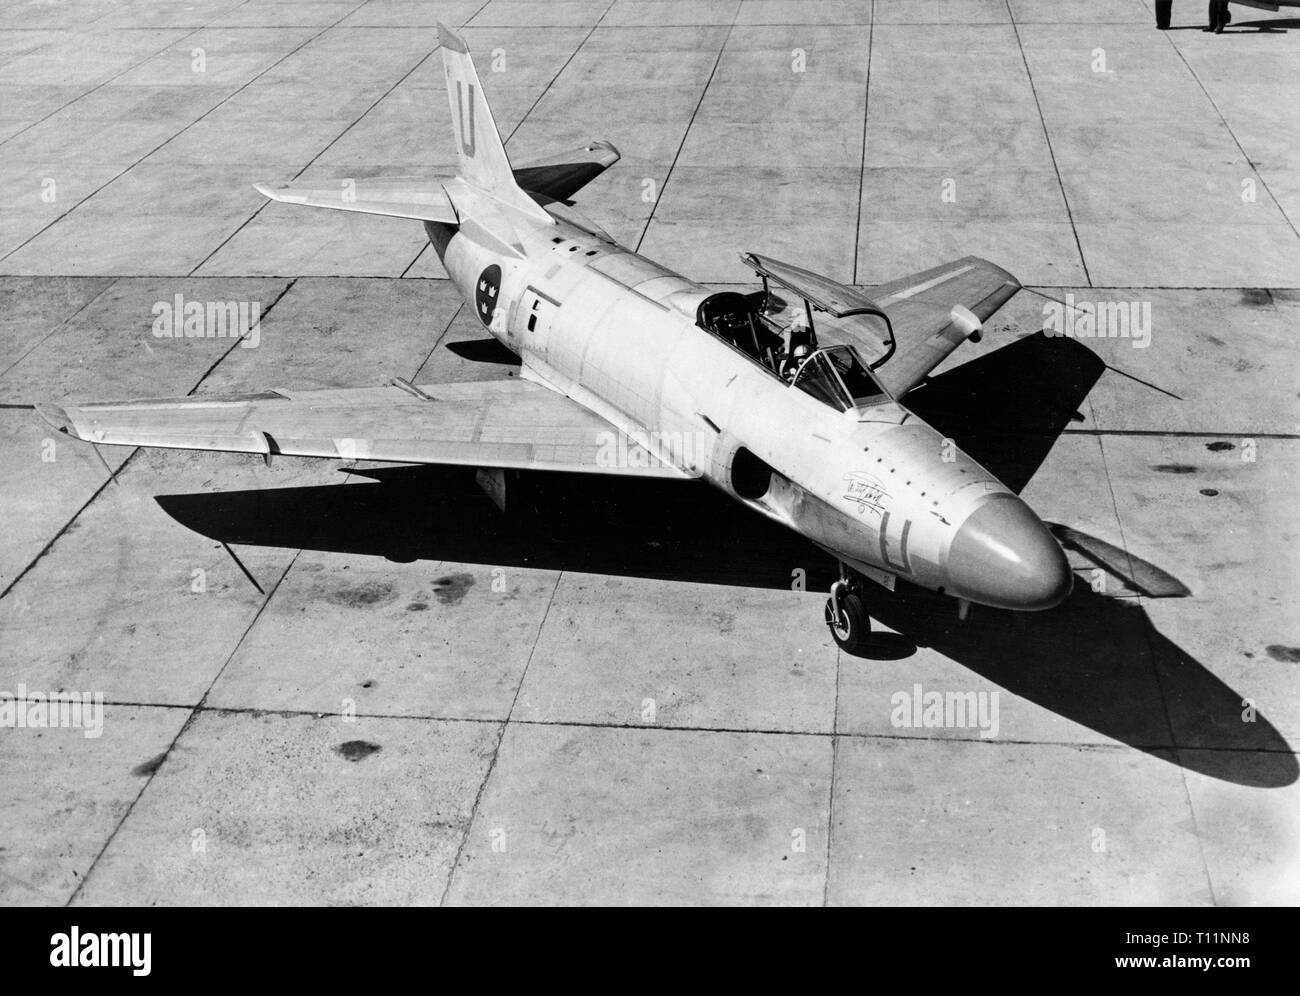 Saab 32 Lansen schwedische Jet Fighter, ein zwei - Sitz, transsonischen militärische Flugzeuge entworfen und von Saab von 1955 bis 1960 für die schwedische Luftwaffe hergestellt. Stockfoto